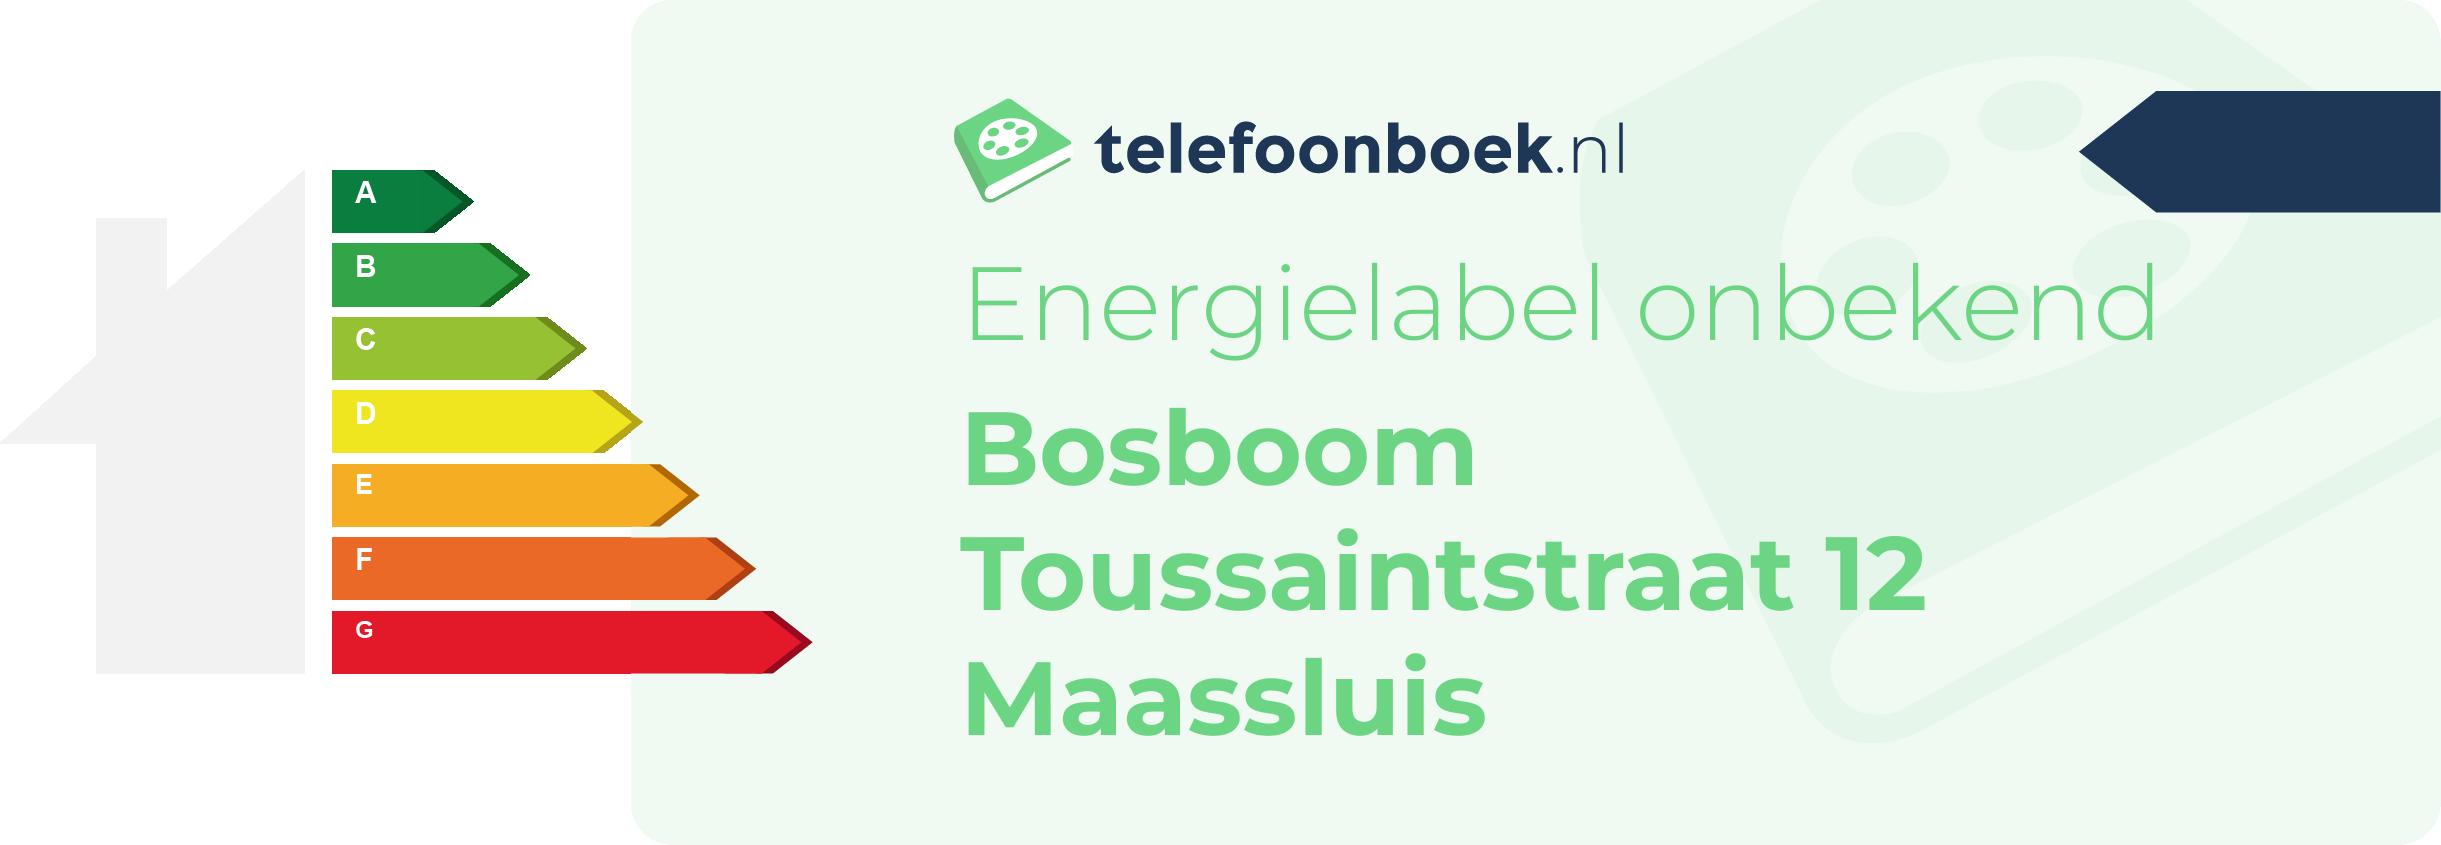 Energielabel Bosboom Toussaintstraat 12 Maassluis